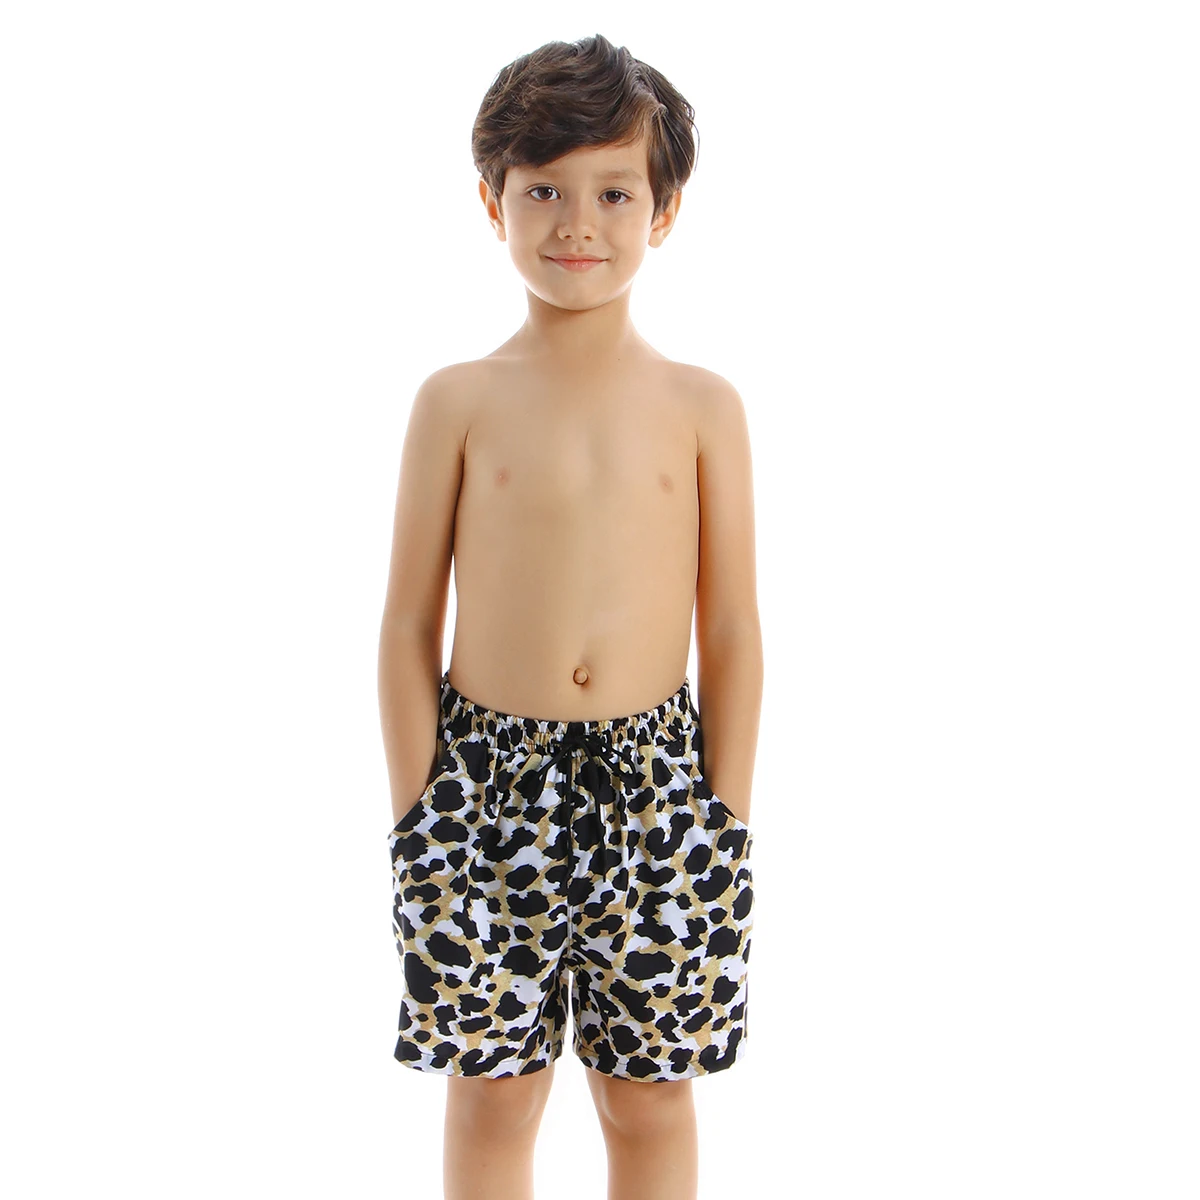 В году, летние шорты для мальчиков подростковые Шорты для плавания плавки дети мальчики пляжные шорты детский купальный костюм плавки с принтом